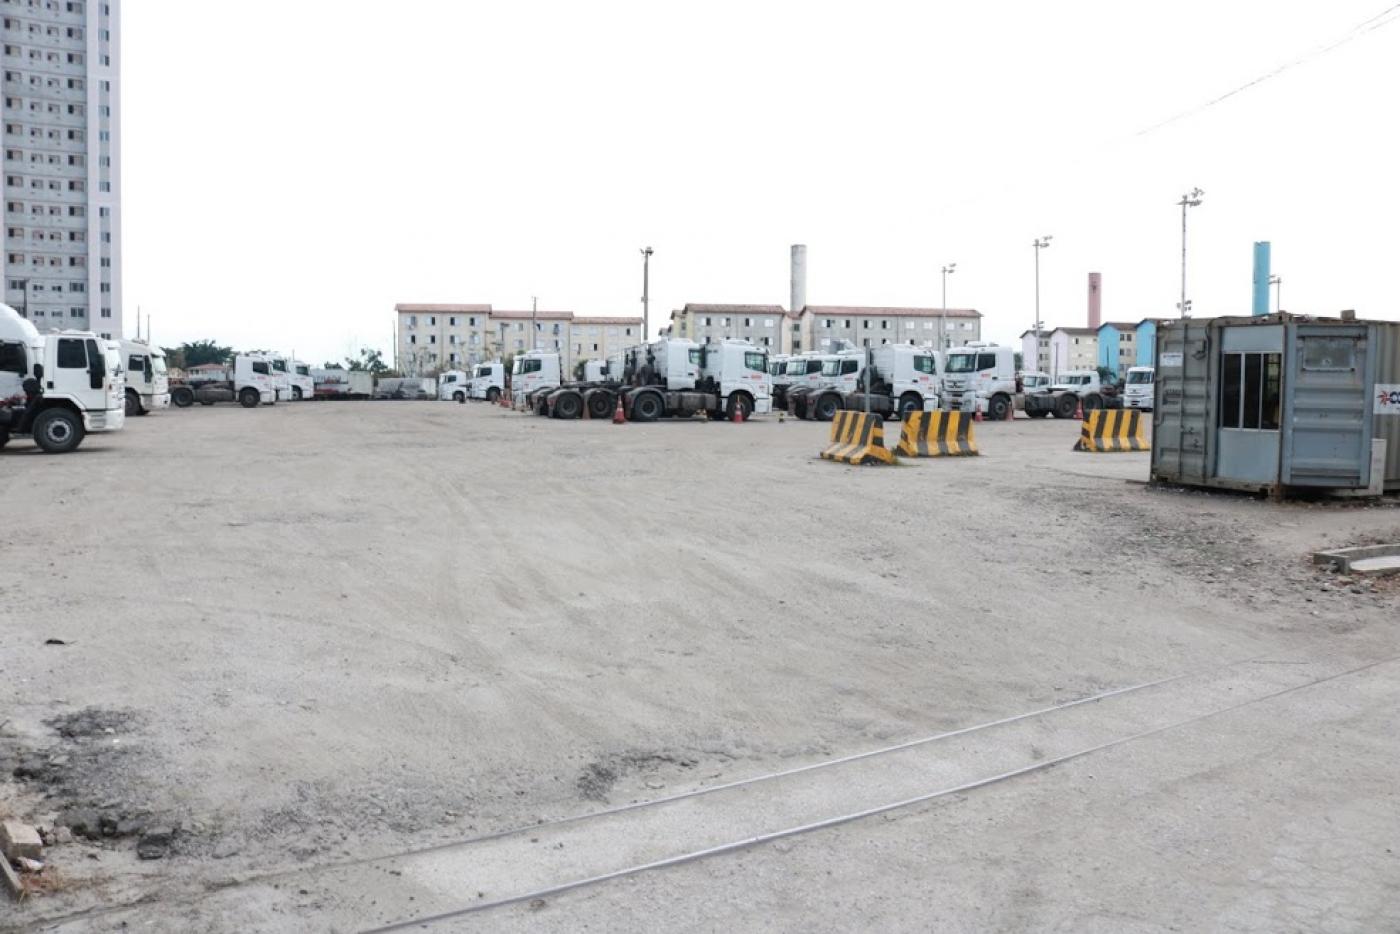 Caminhões estacionados no terreno que vai abrigar as moradias. #pracegover